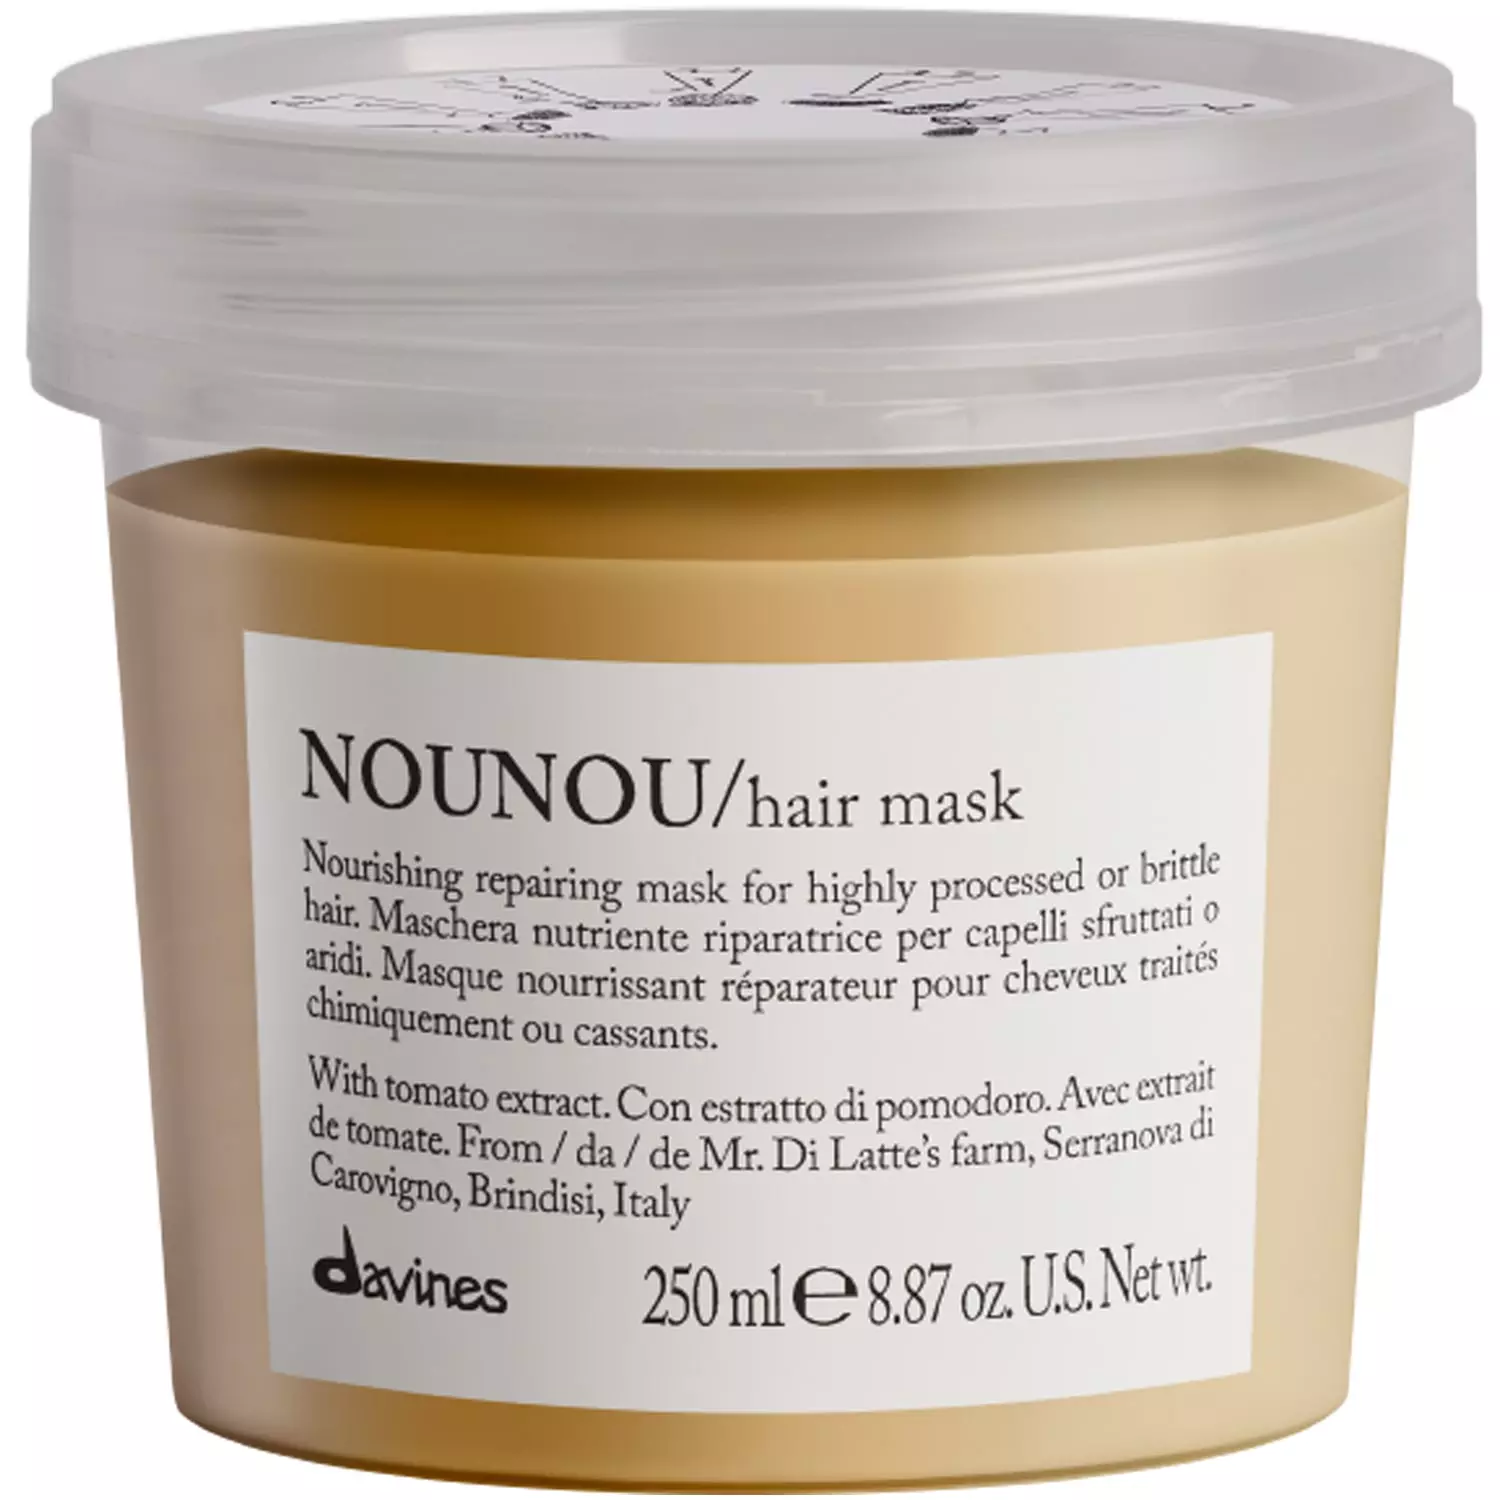 Интенсивная восстанавливающая маска для глубокого питания волос Nounou Hair Mask, 250 мл